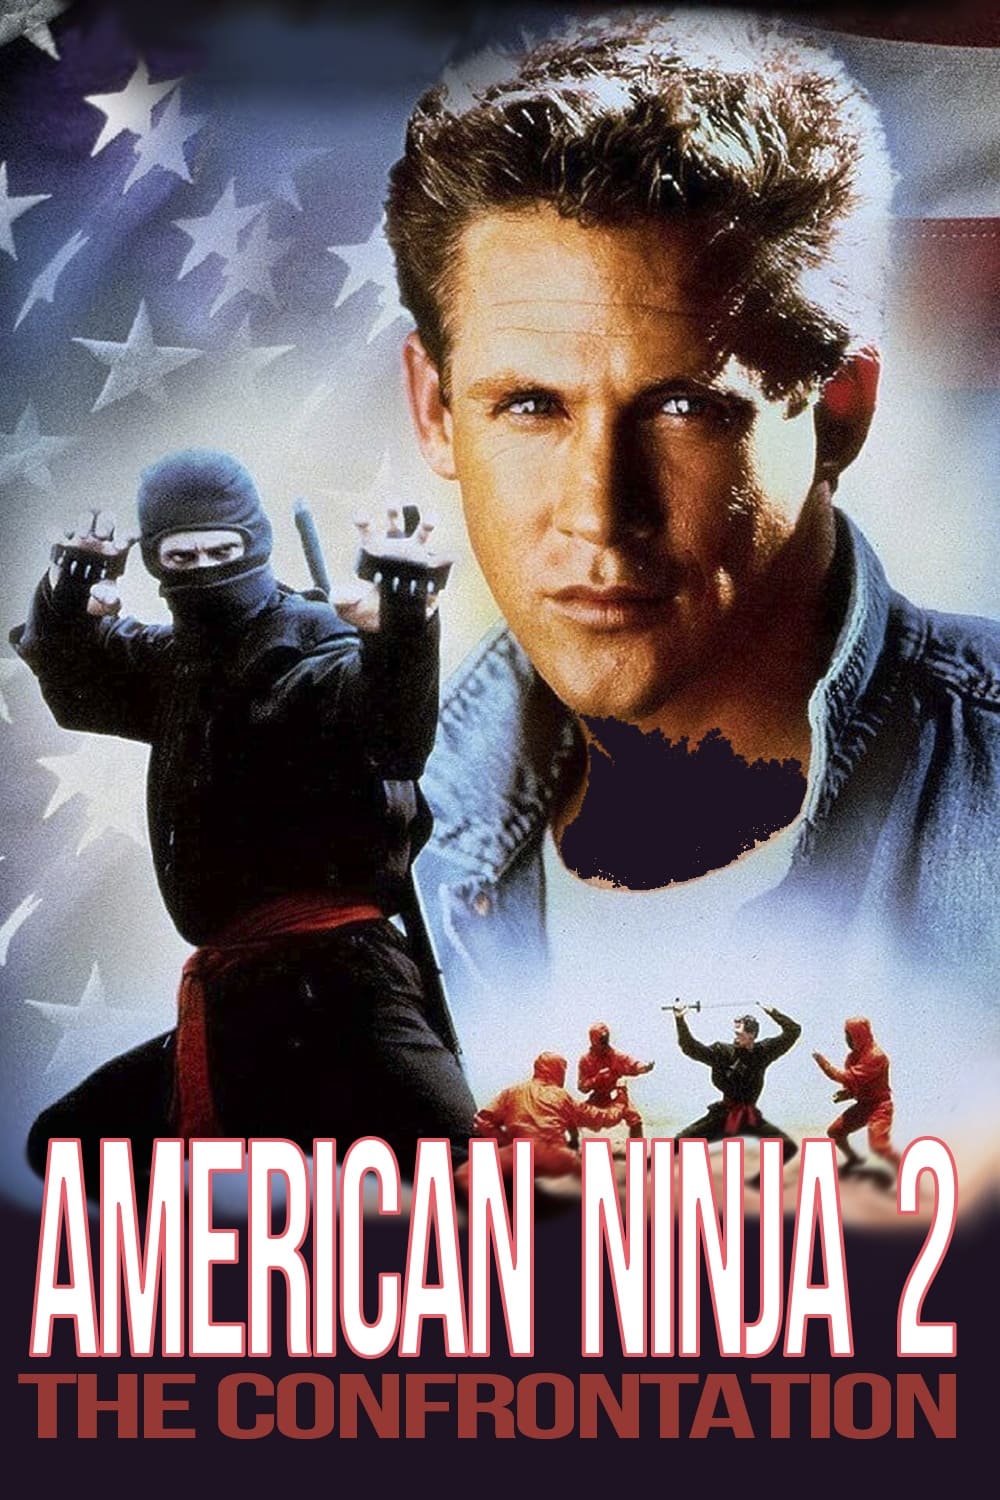 Amerikan Ninja 2 Poster